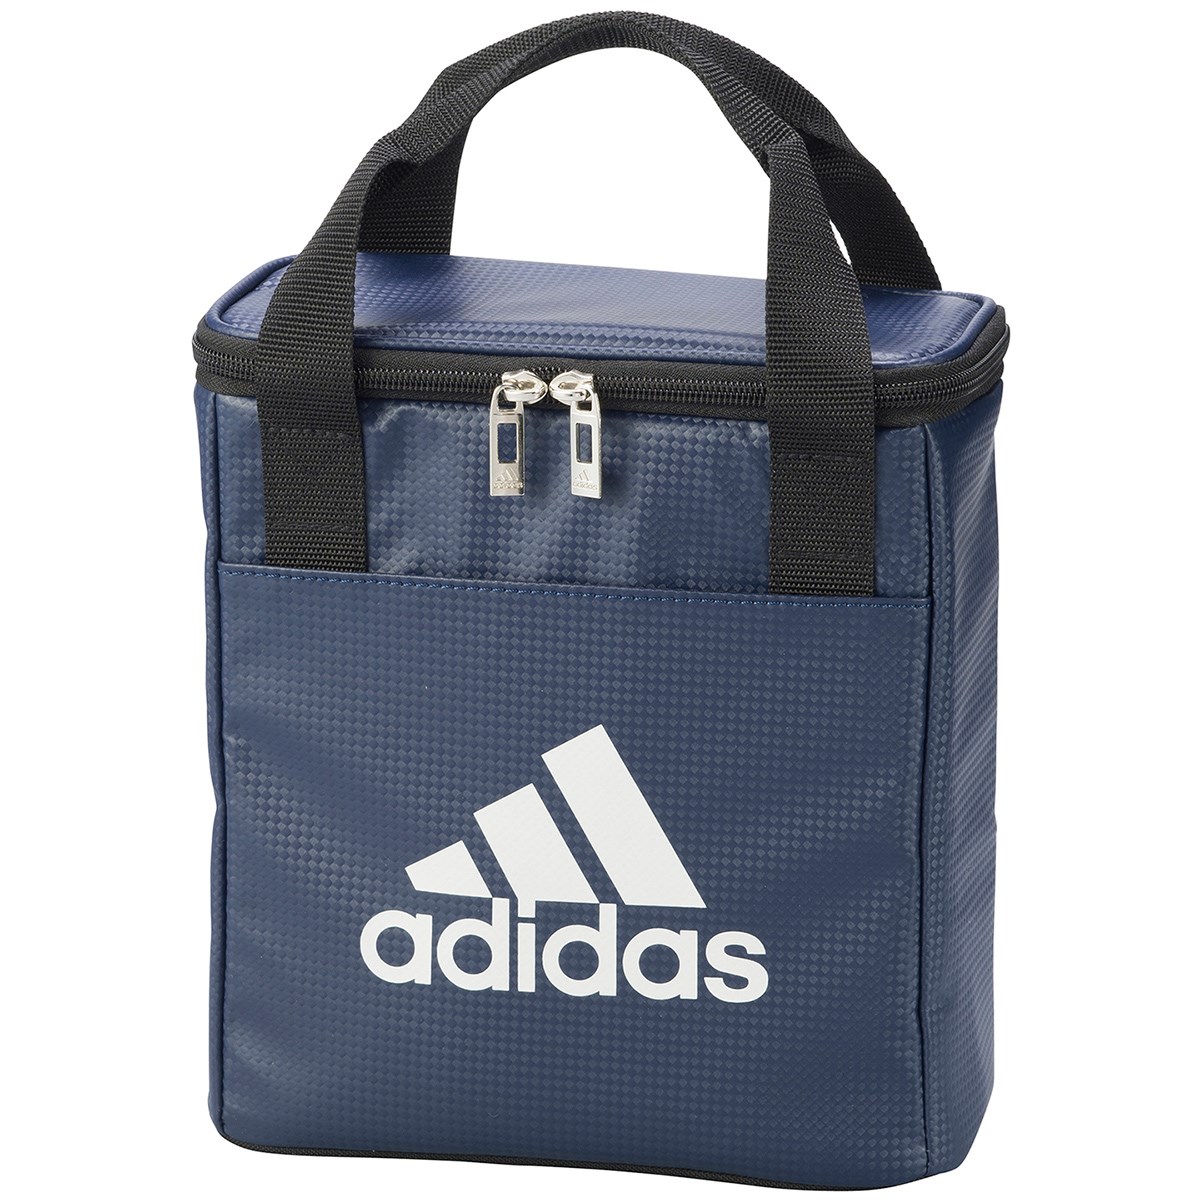 クーラーバッグ(ラウンドバッグ)|Adidas(アディダス) AWT01の通販 - GDOゴルフショップ(0000501509)